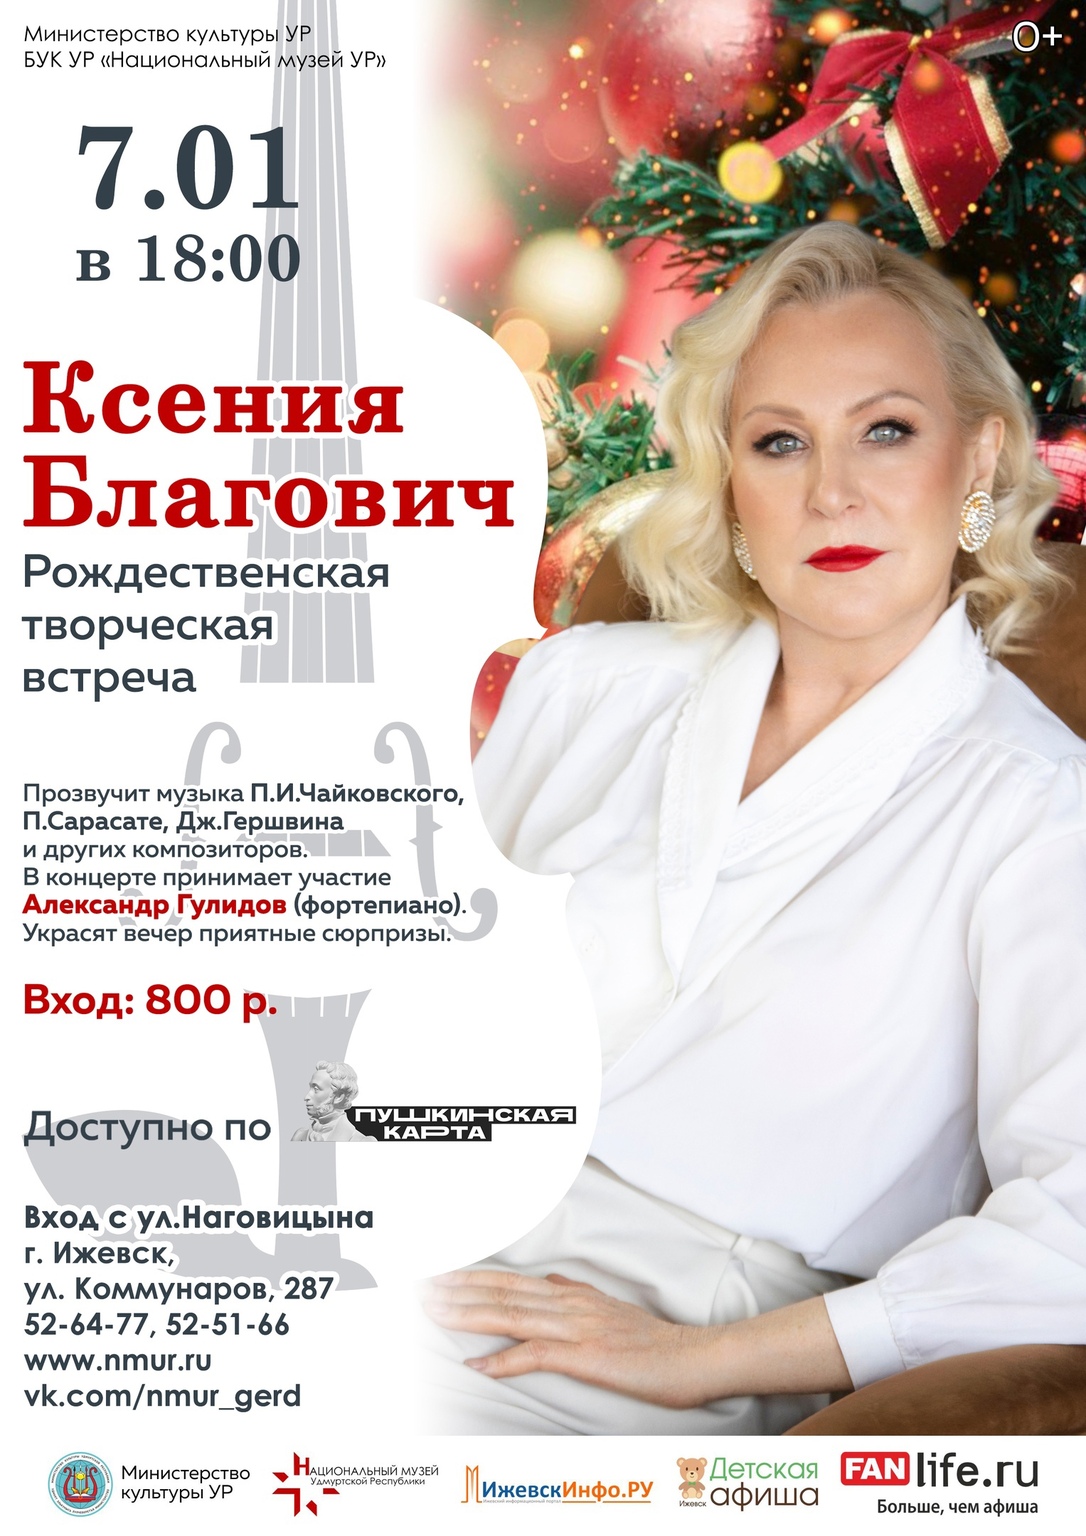 Рождественская творческая встреча Ксении Благович